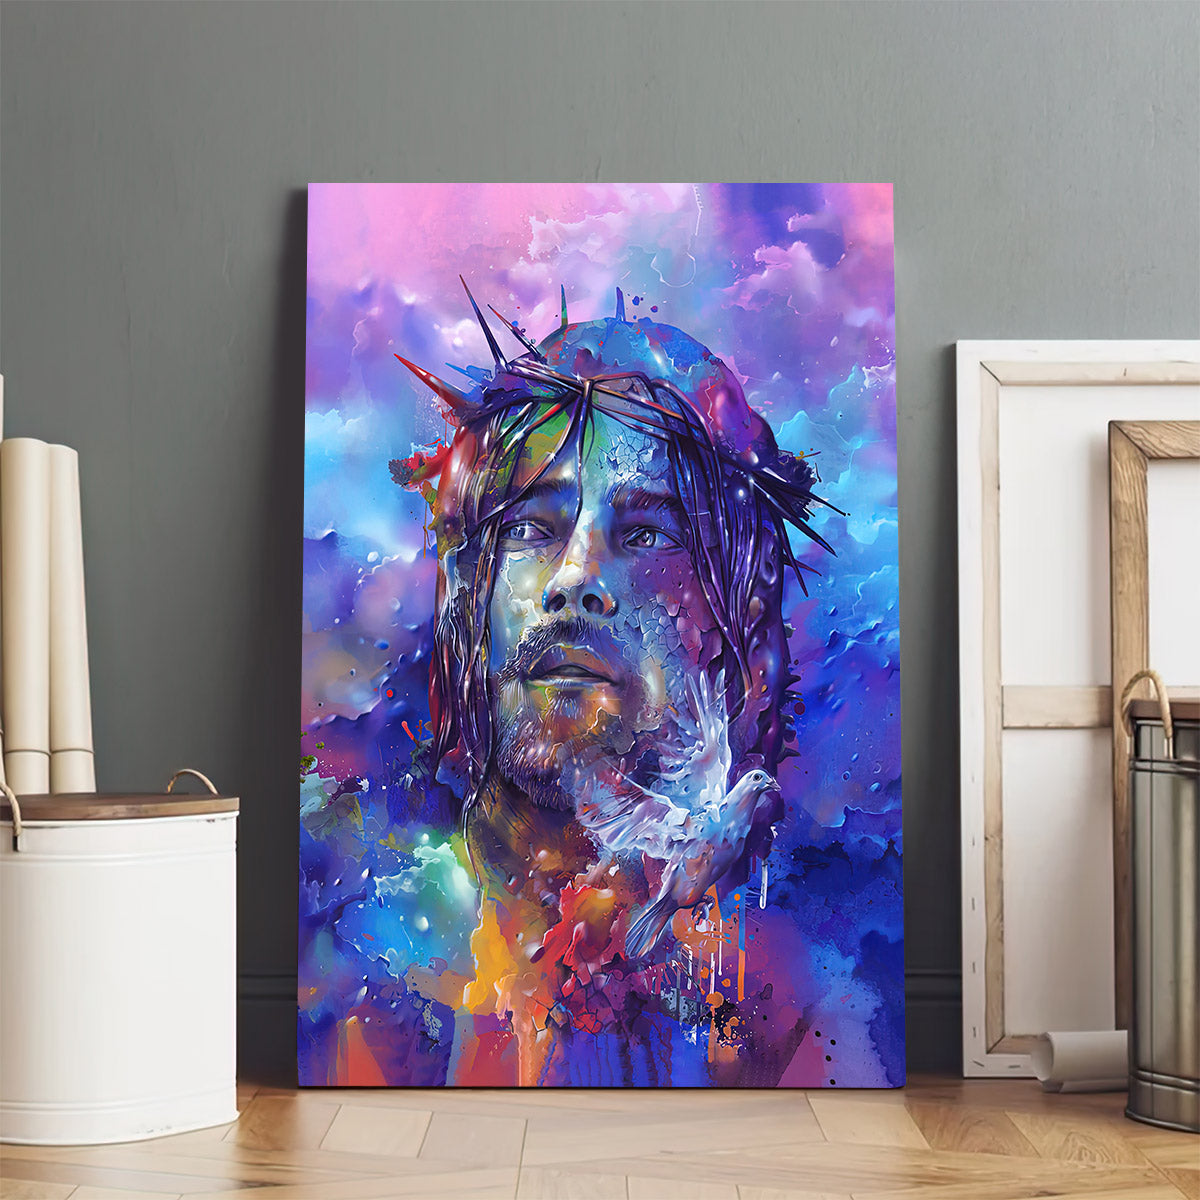 Portrait Of Jesus Canvas Pictures - Jesus Canvas Painting - Christian Canvas Prints